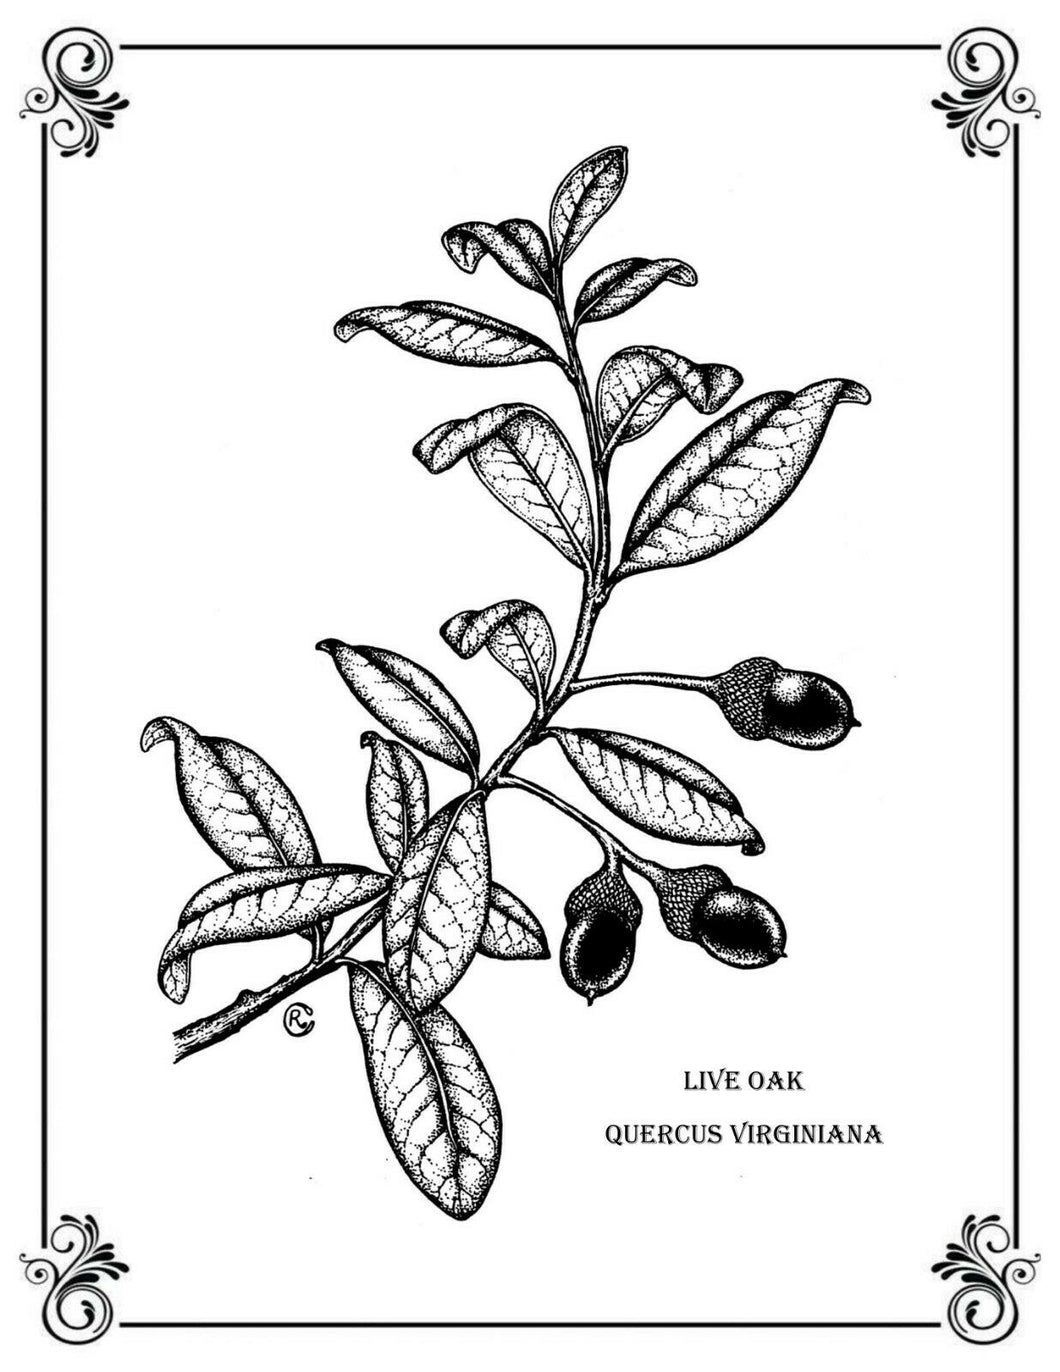 Live Oak Quercus virginiana Print